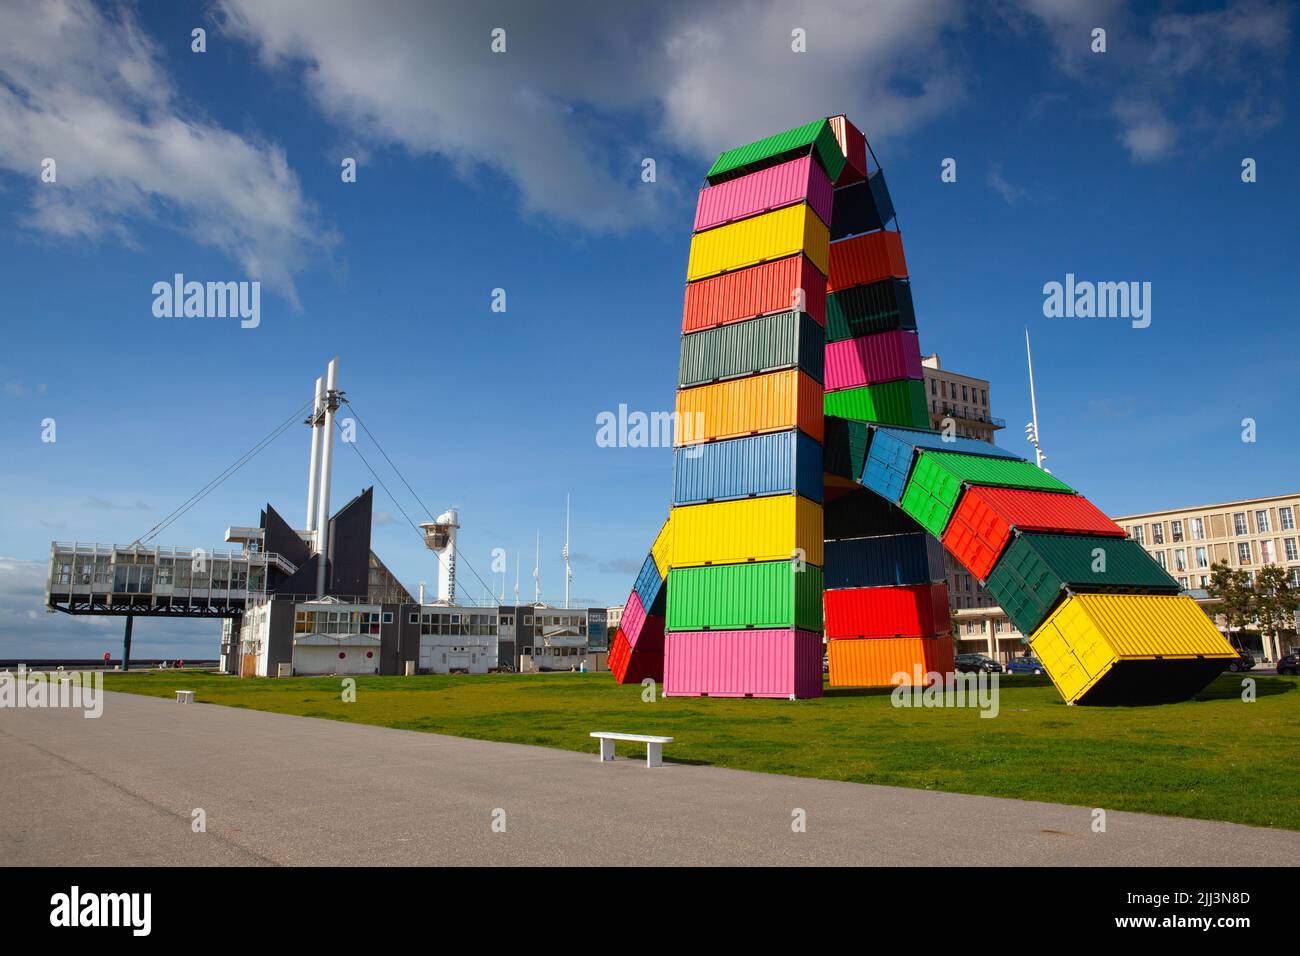 Le Havre, France - octobre 13,2021 : installation contemporaine colorée Catene de Containers par Vincent Ganivet dans le port de Southampton du Havre Banque D'Images